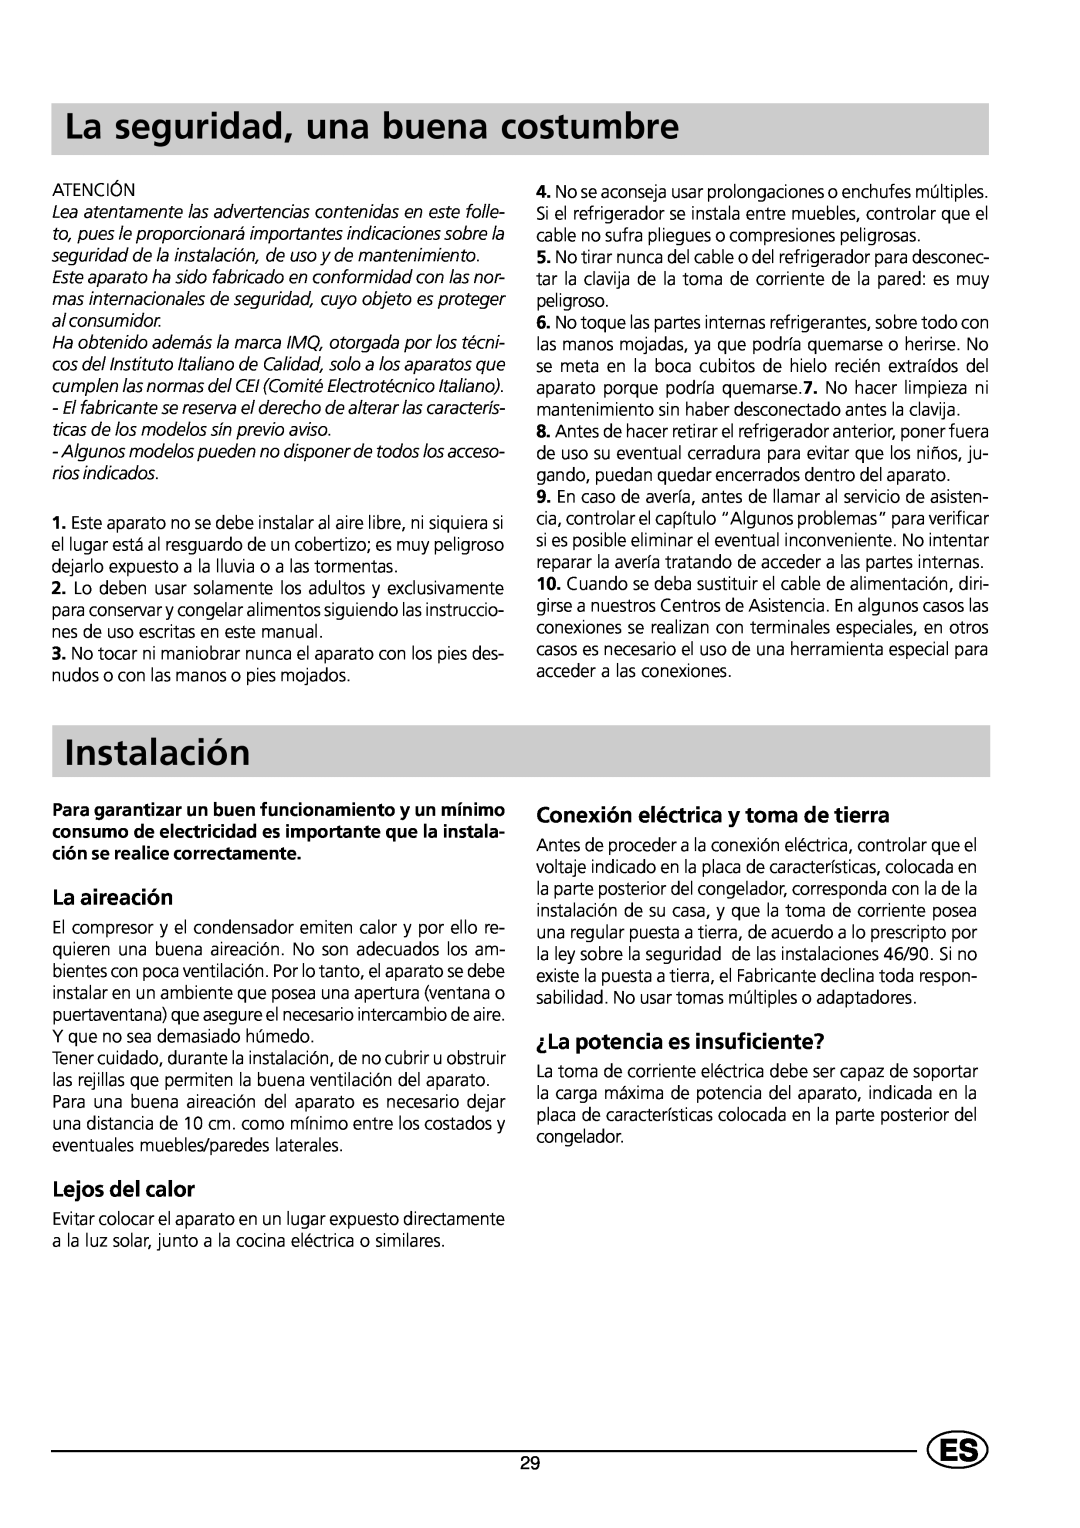 Indesit GCO120 manual La seguridad, una buena costumbre, Instalación, La aireación, Lejos del calor 